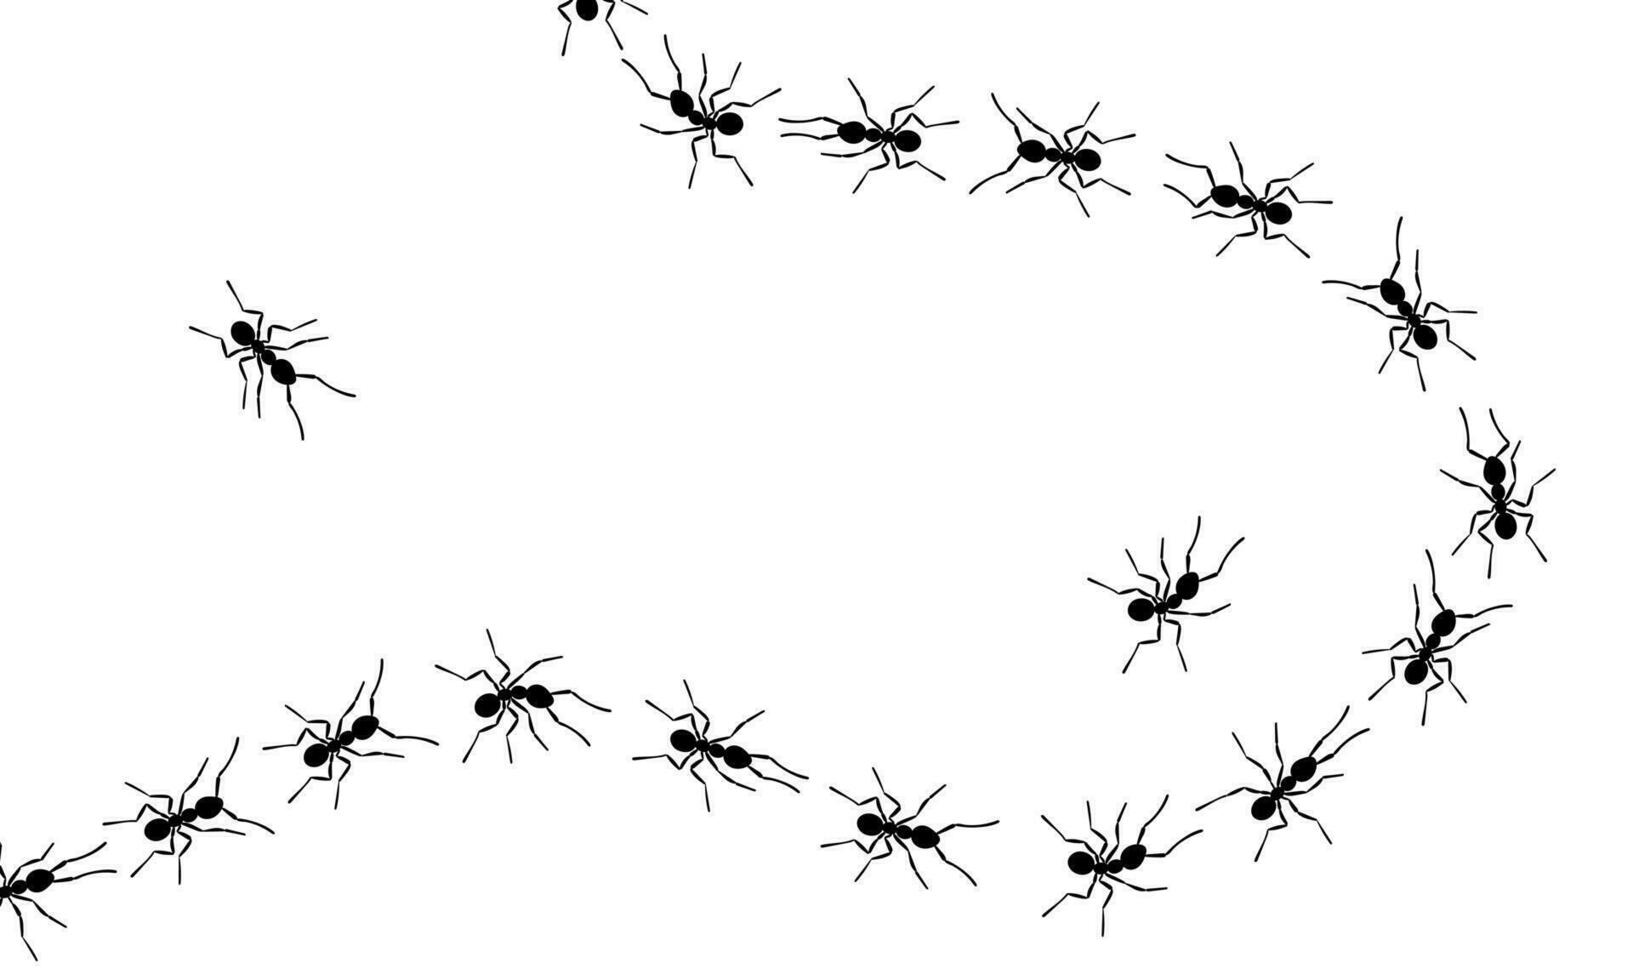 Le formiche operaie seguono la linea di un disegno in stile piatto illustrazione vettoriale isolata su sfondo bianco.